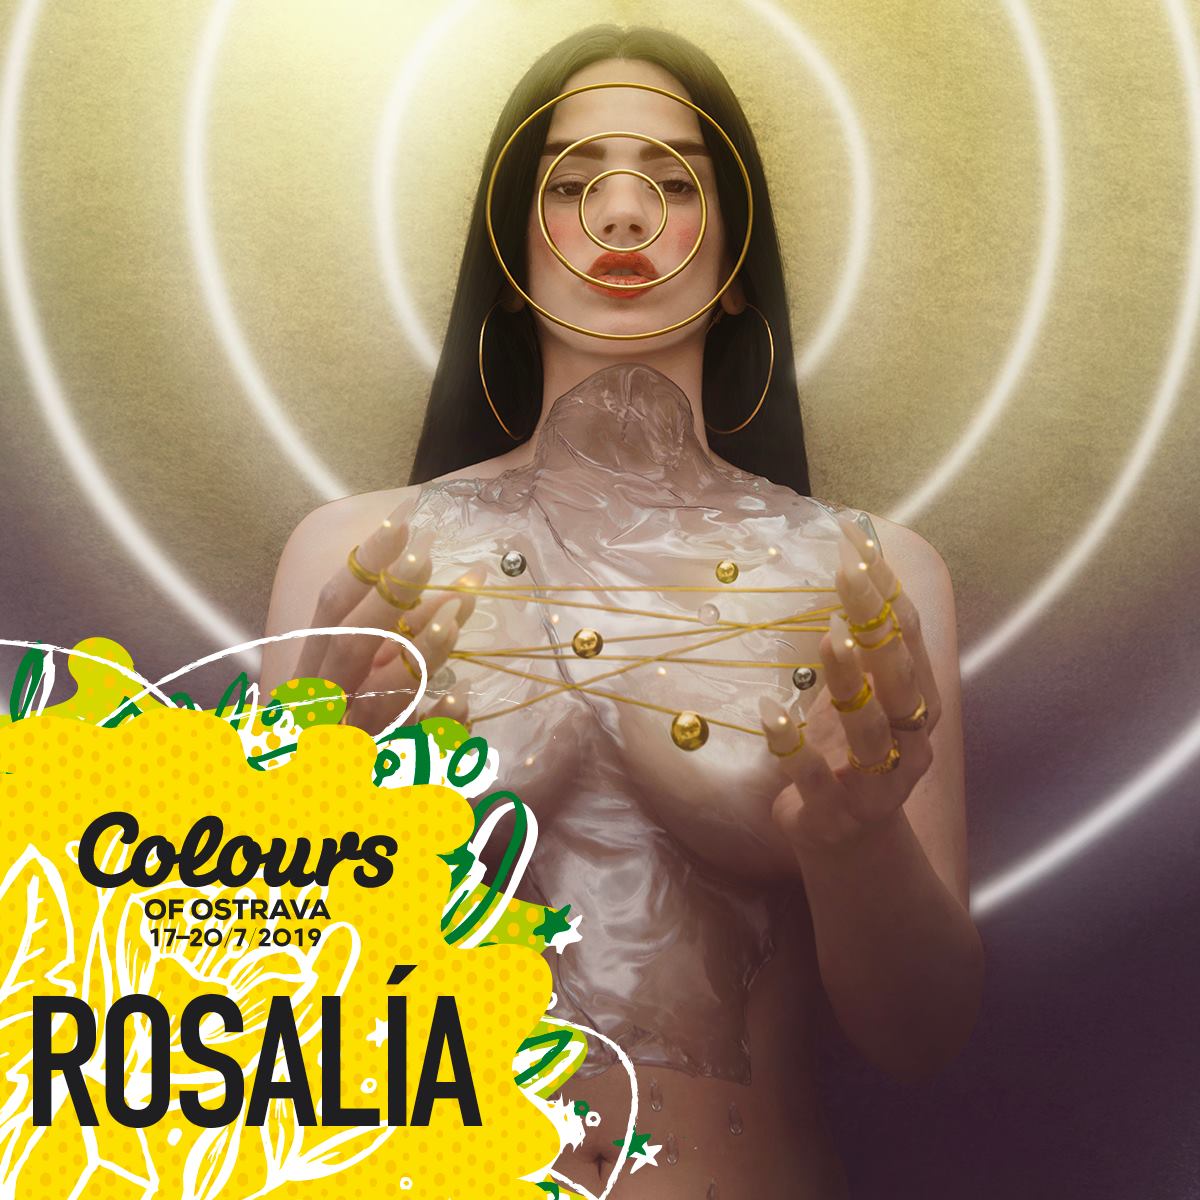 Španielska speváčka Rosalía je ďalšou hviezdou Colours of Ostrava